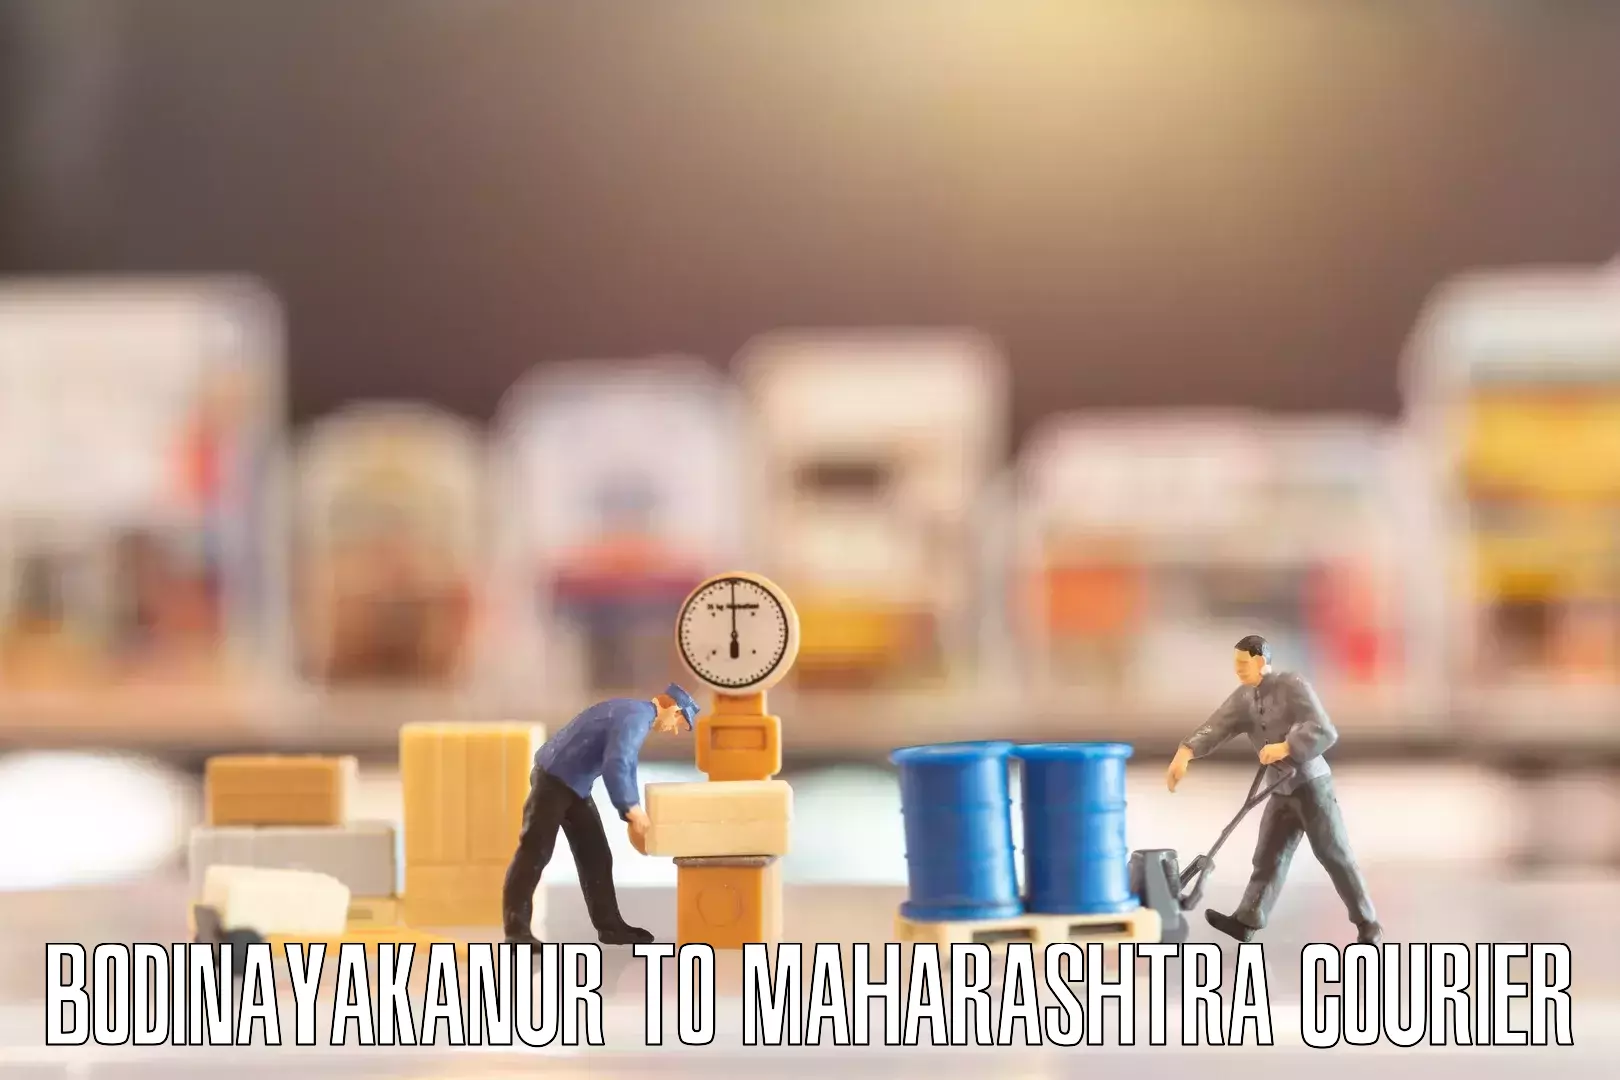 Personalized moving plans Bodinayakanur to Maharashtra